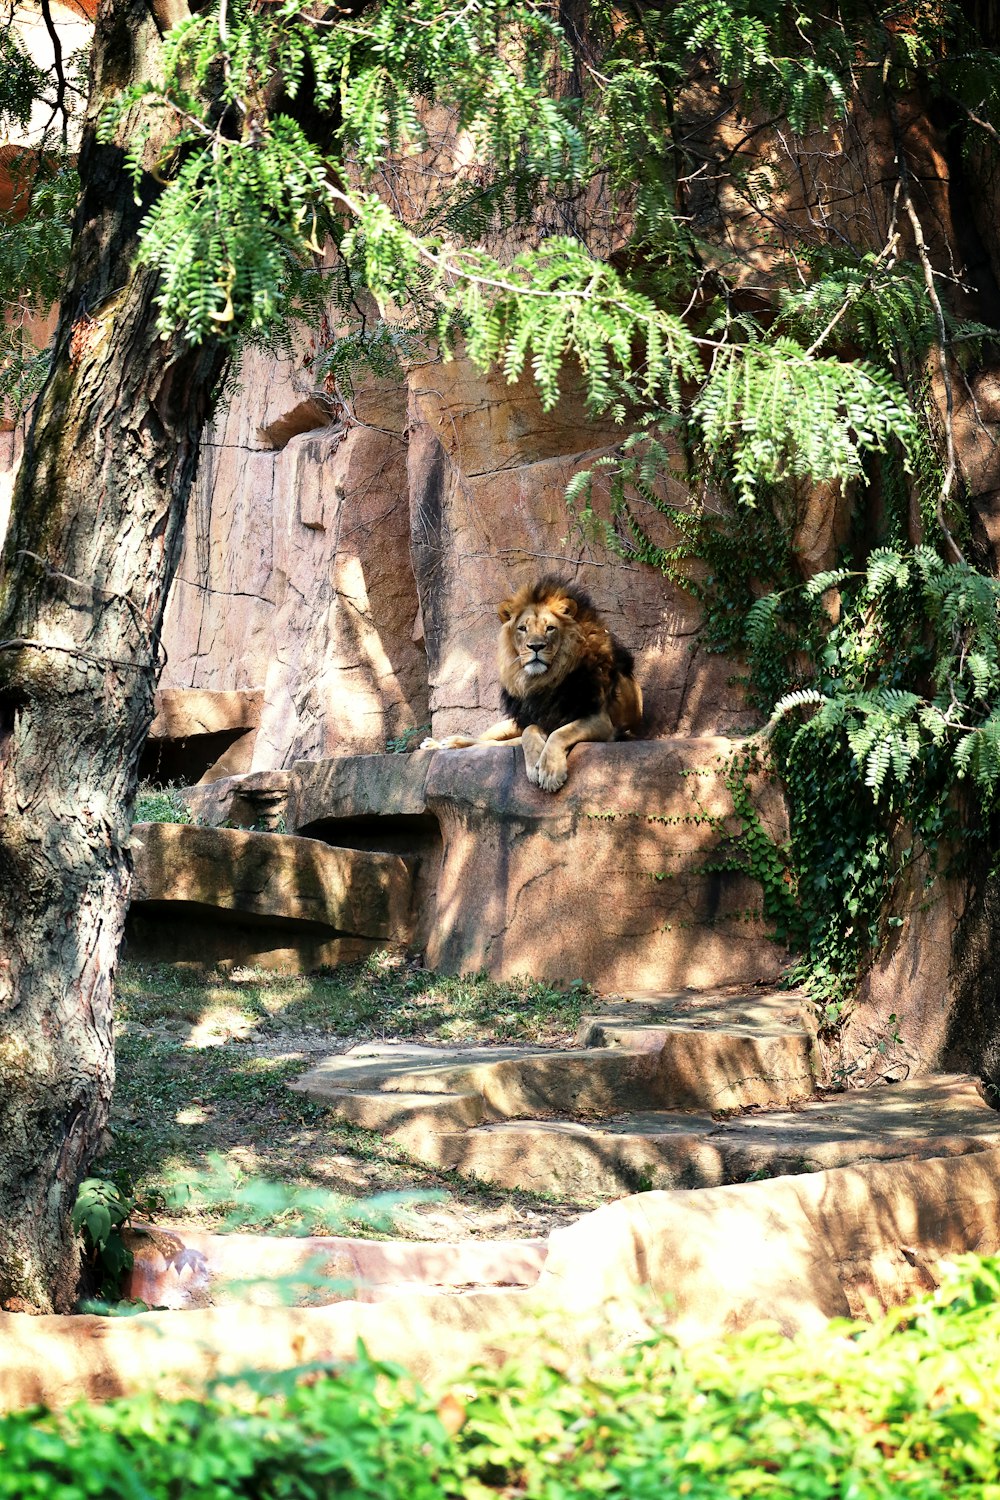 Un lion se reposant sur un rocher dans un enclos de zoo